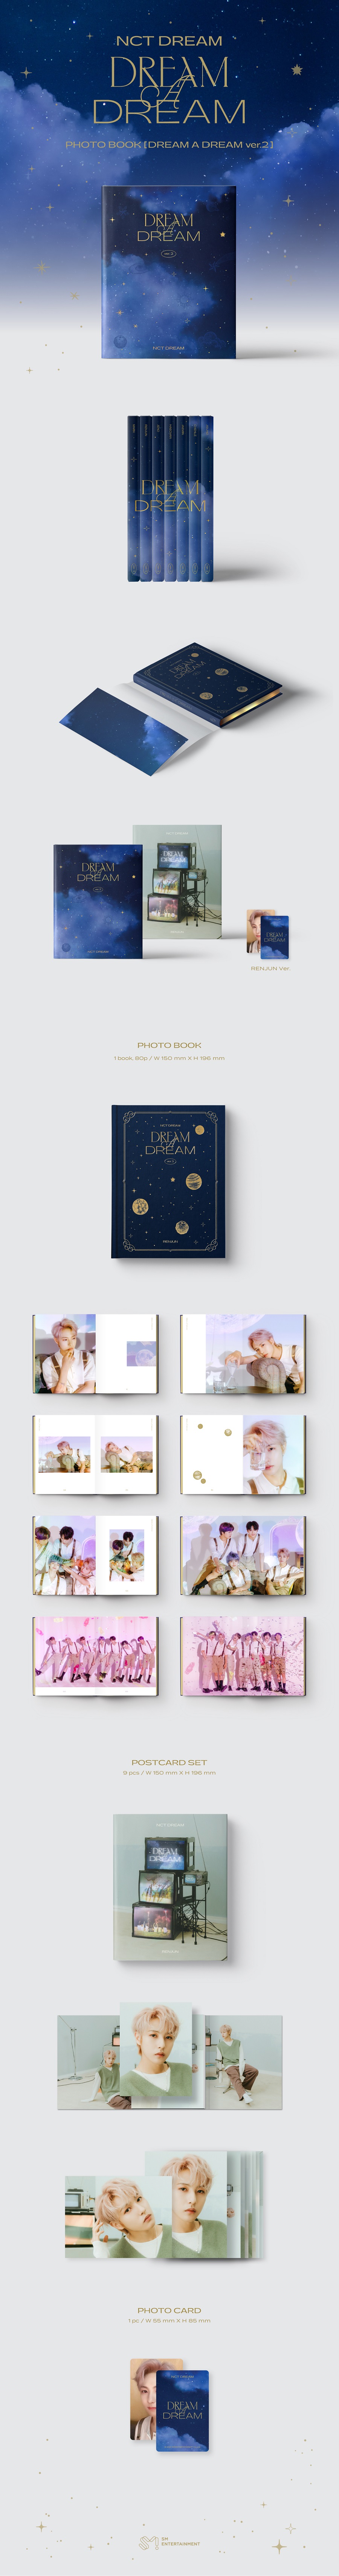 NCT DREAM - DREAM A DREAM Photobook Ver.2 [런쥔 Ver.]